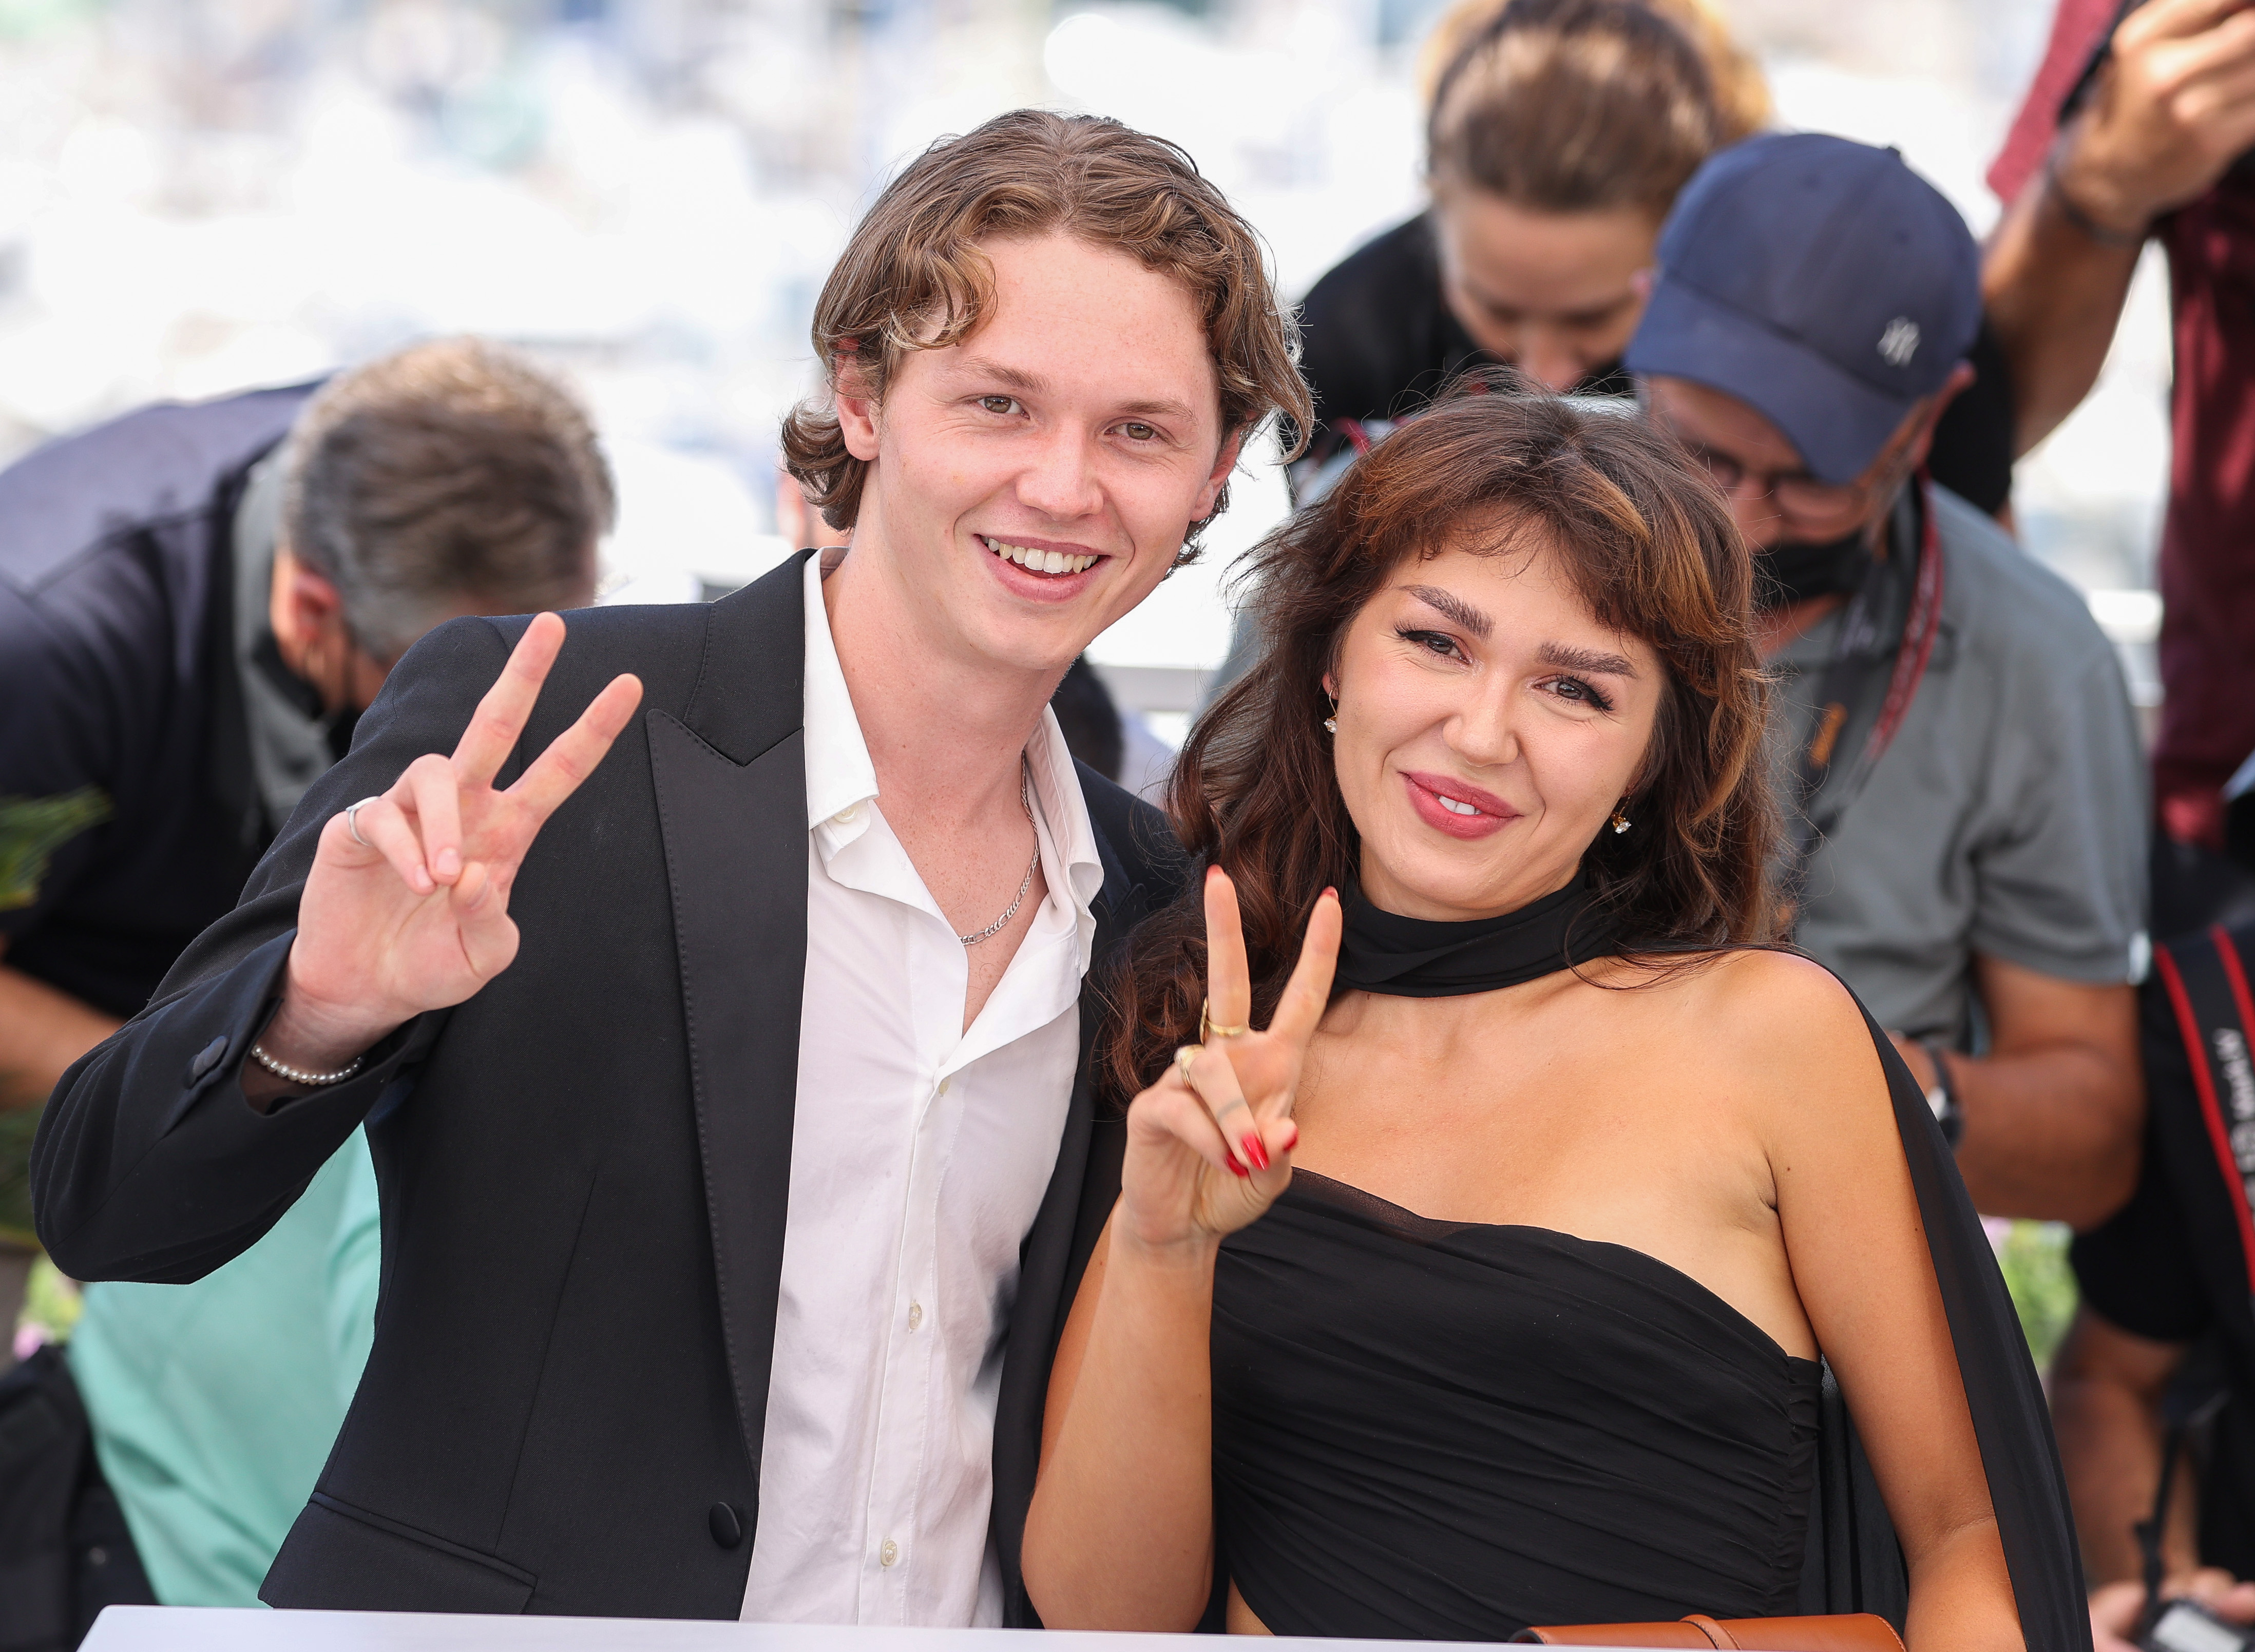 Jack und Mercedes Kilmer besuchen den "Val"-Fotocall während der 74. jährlichen Filmfestspiele von Cannes in Cannes, Frankreich, am 7. Juli 2021. | Quelle: Getty Images